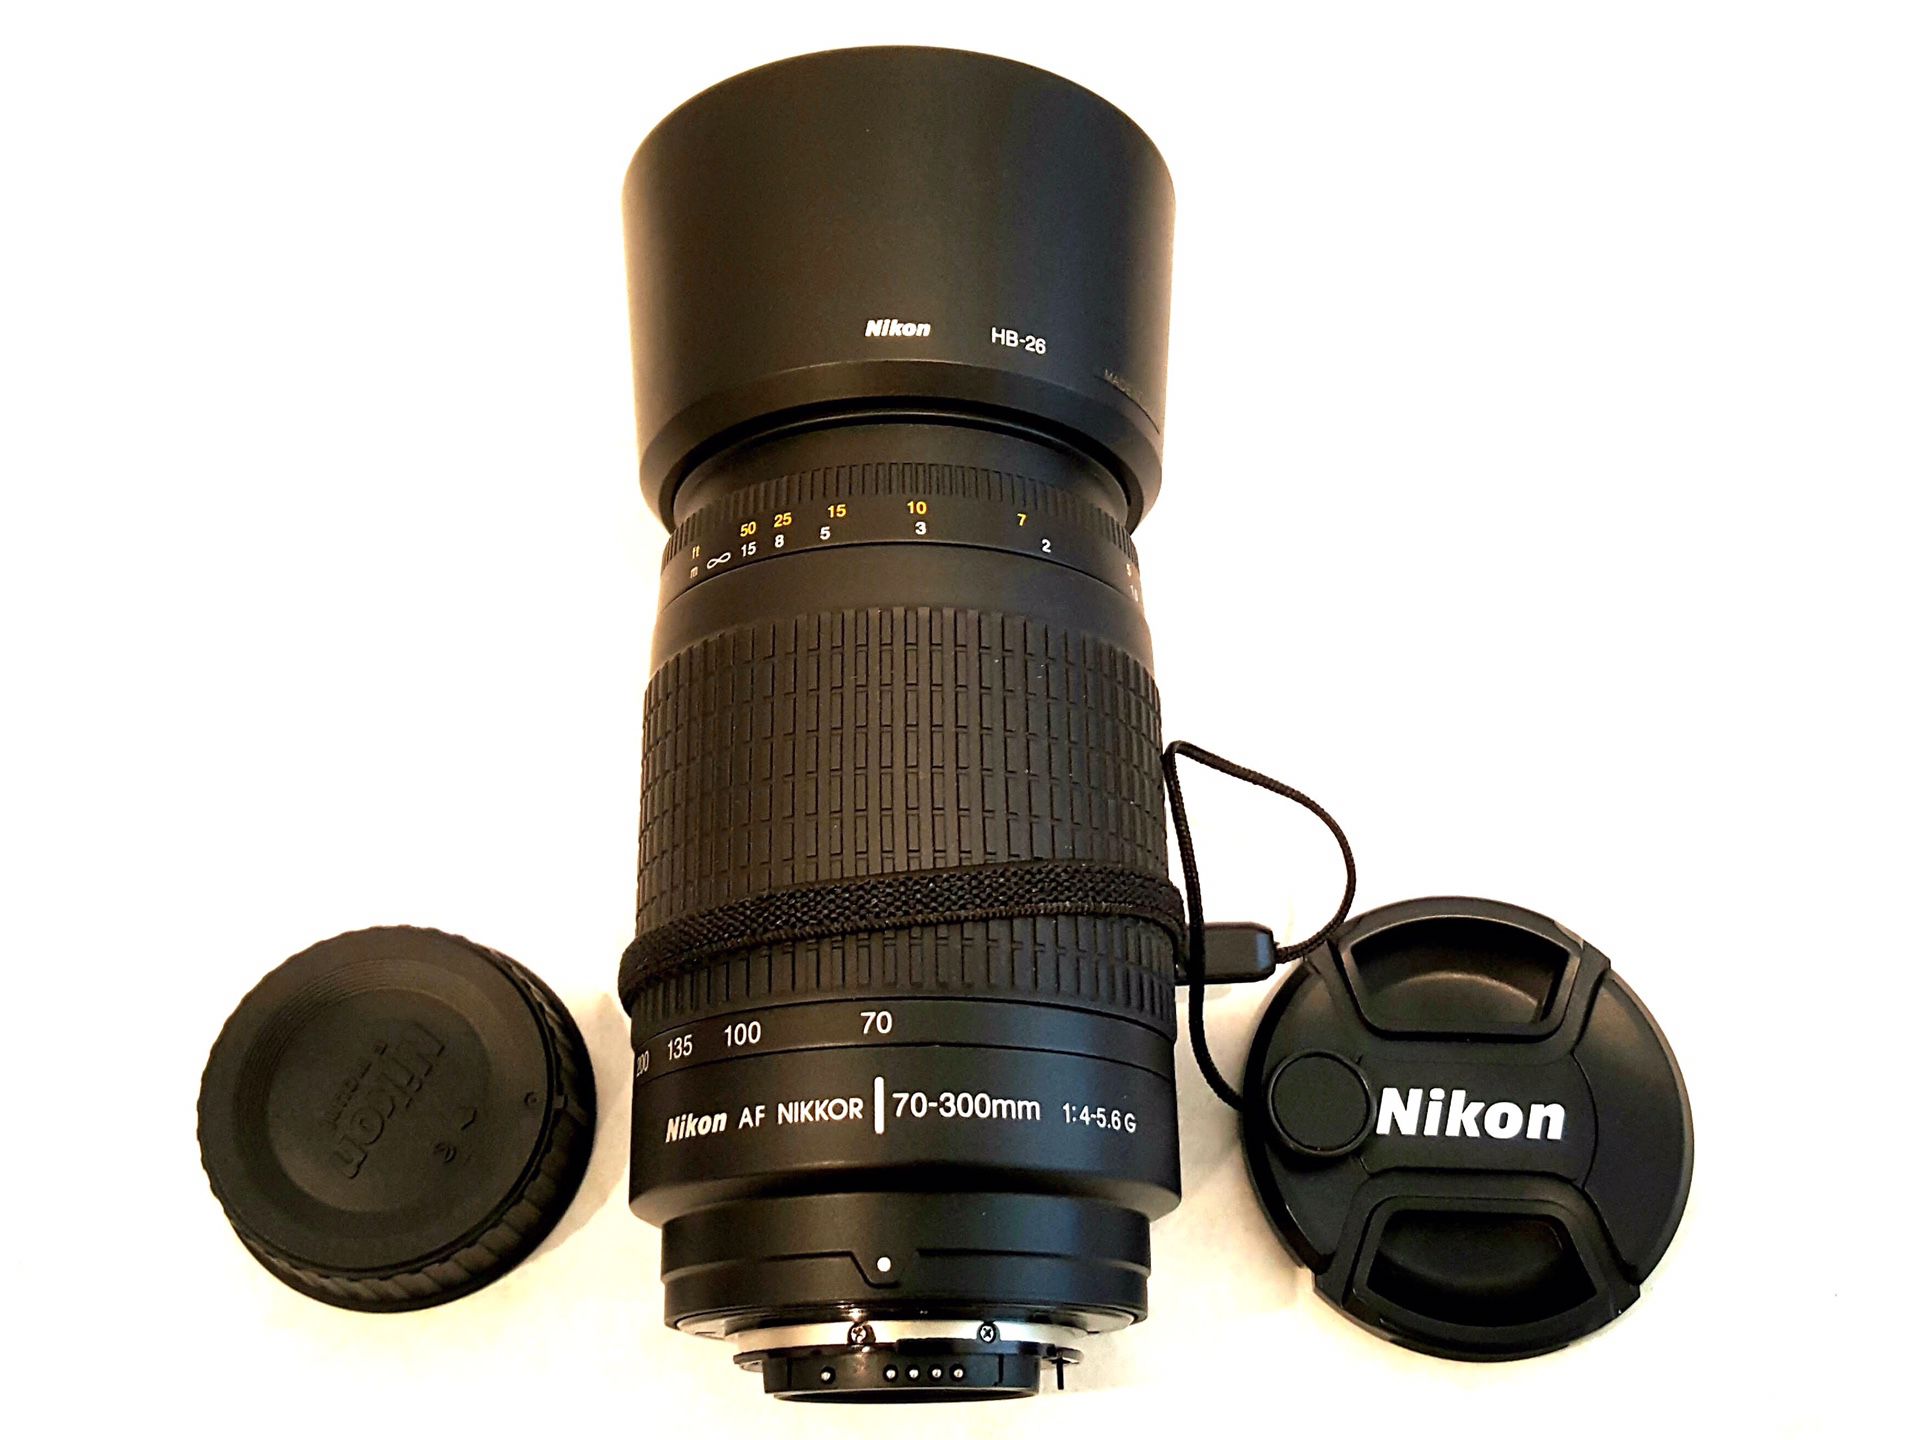 Nikon AF Nikkor 70-300mm zoom lens